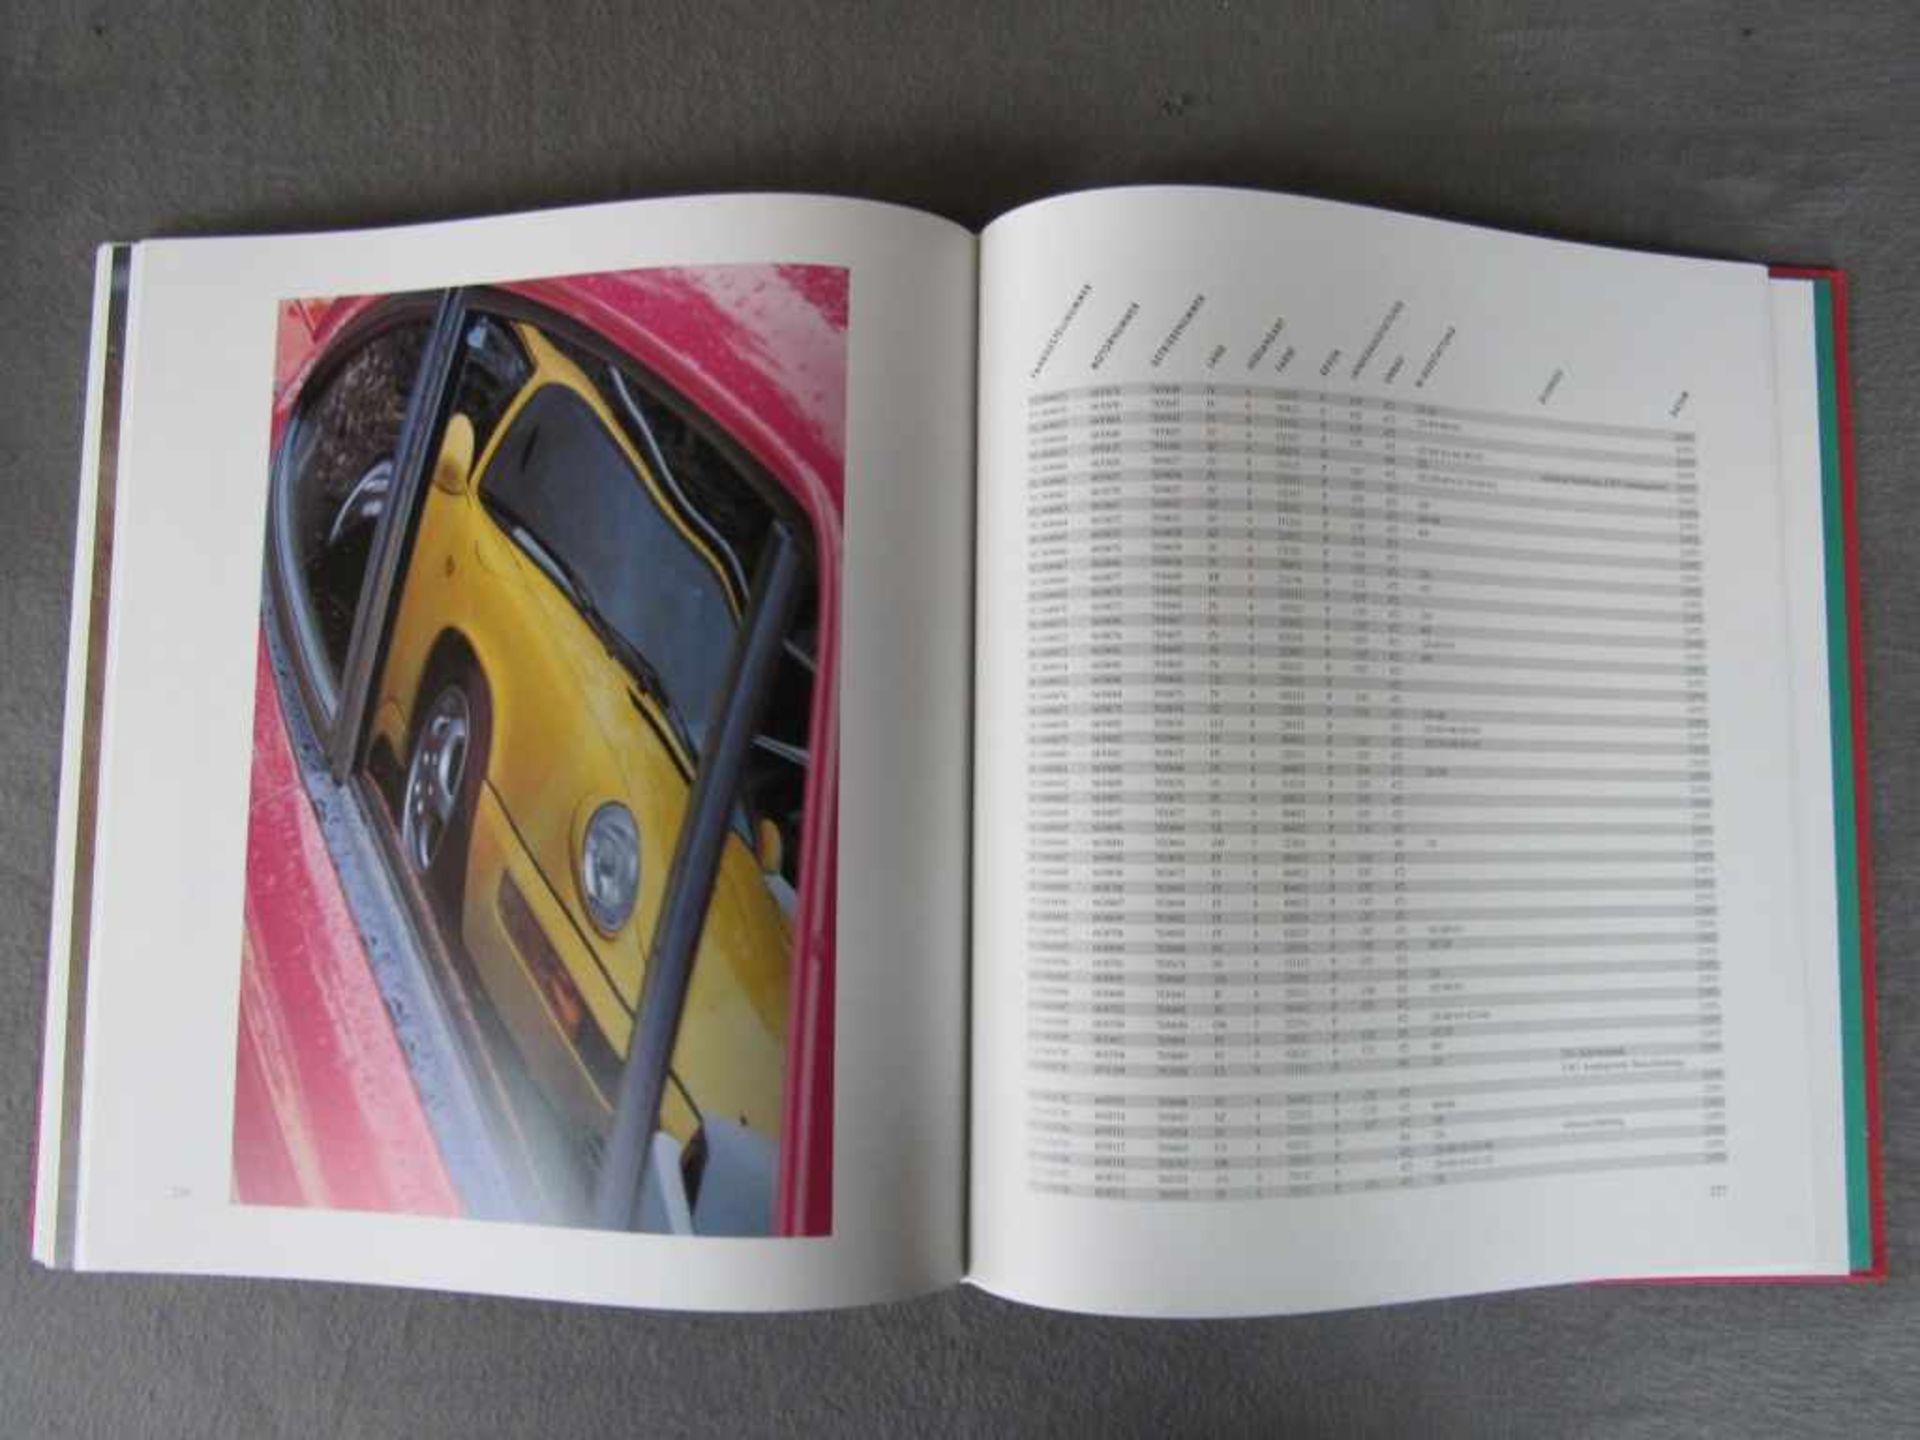 Sehr seltenes Porsche Carrera RS Buch limitierte Auflage nummeriert Dr. Thomas Gruber und Dr. Georg, - Image 7 of 8